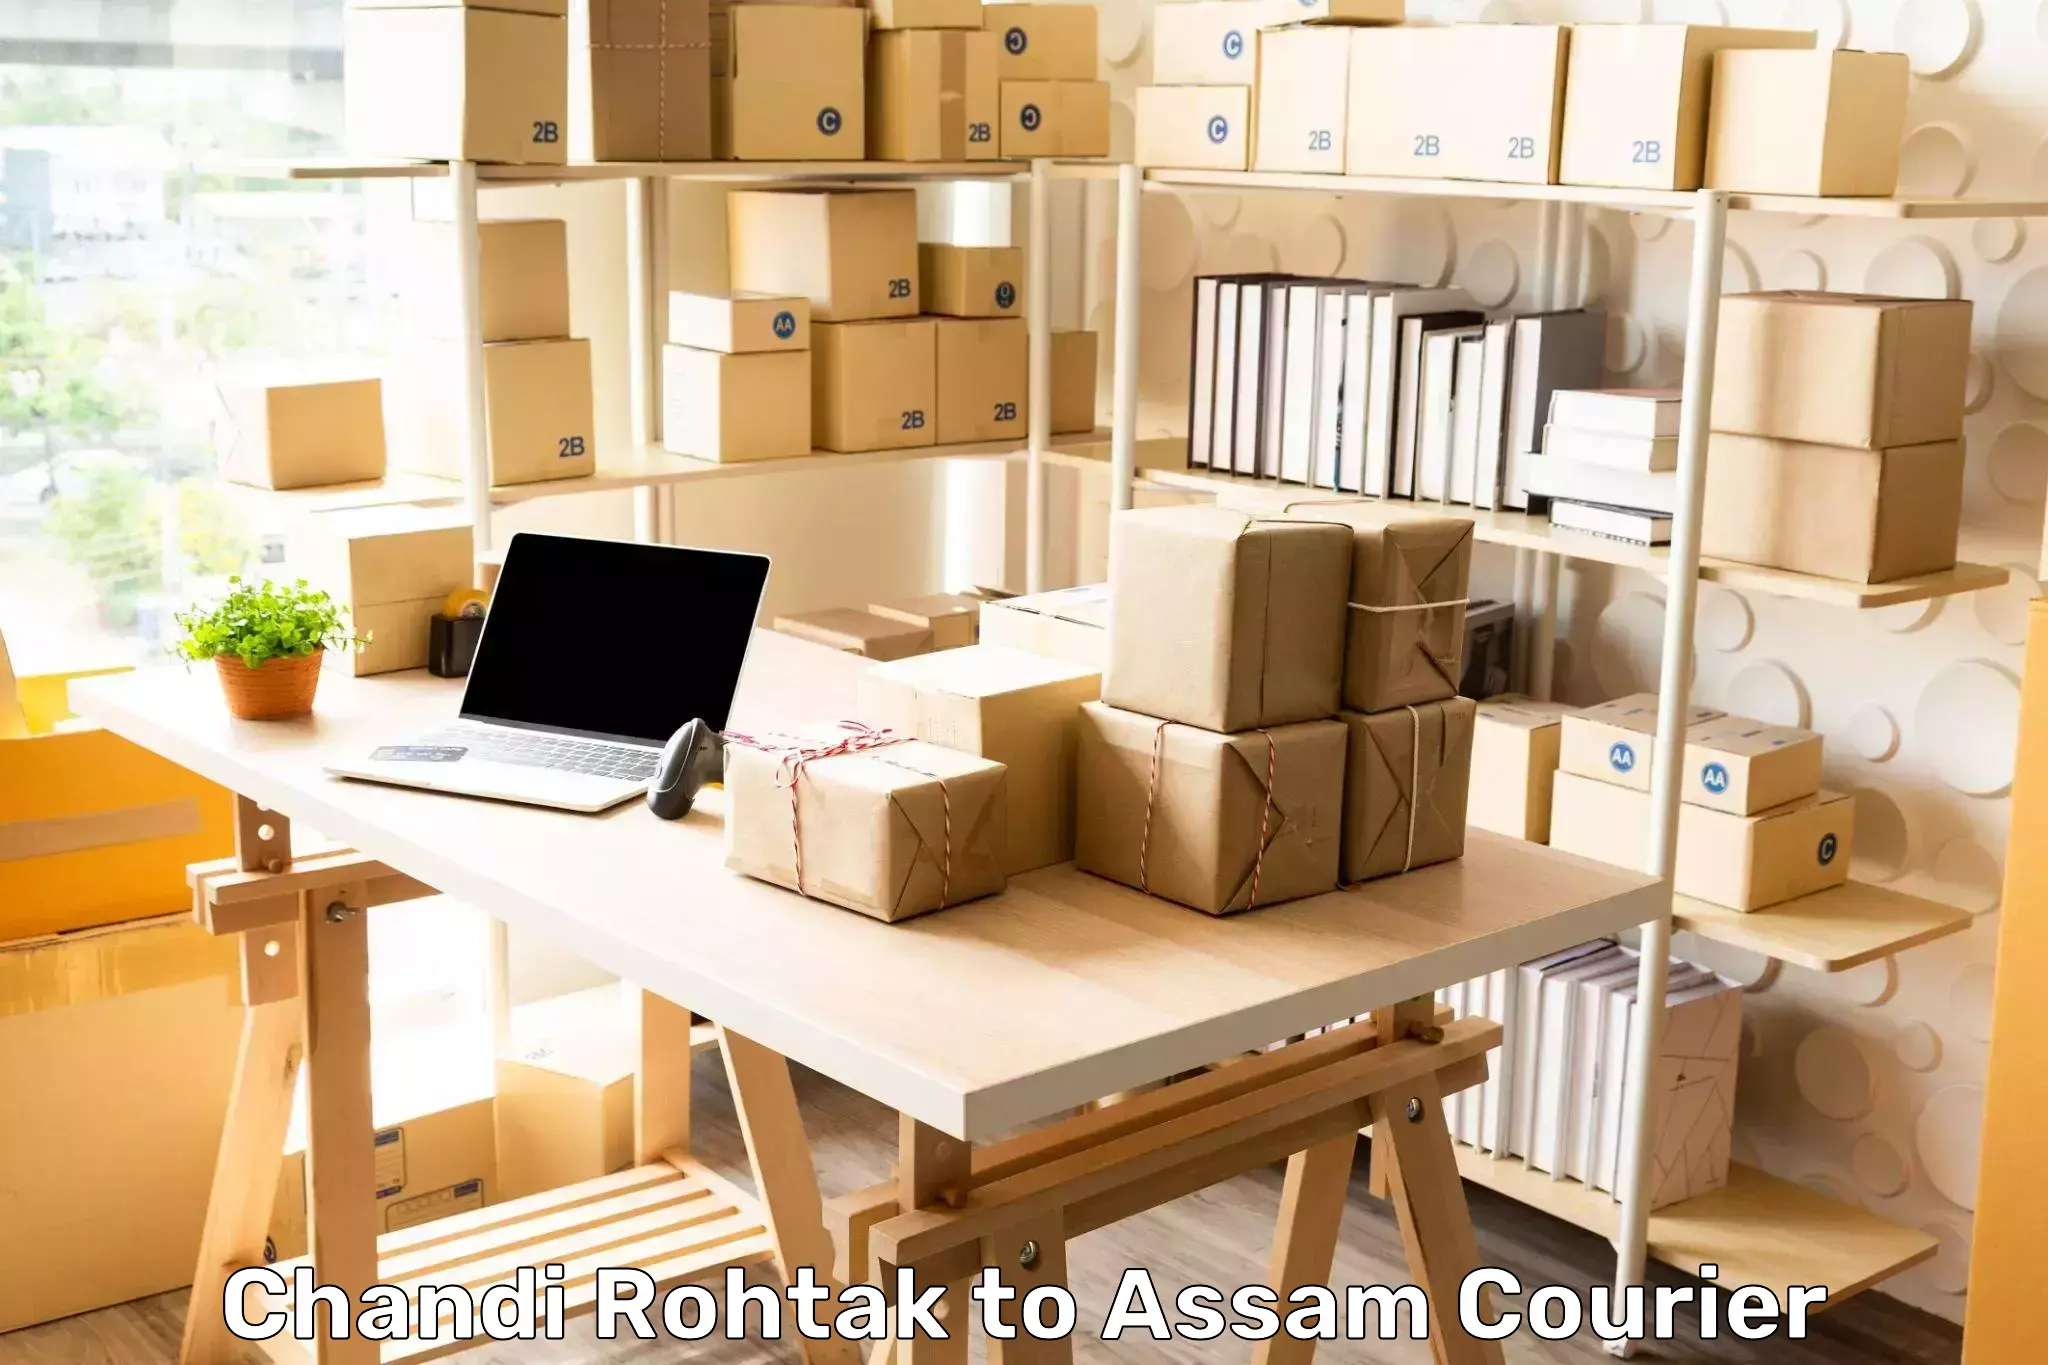 Express logistics service Chandi Rohtak to Assam